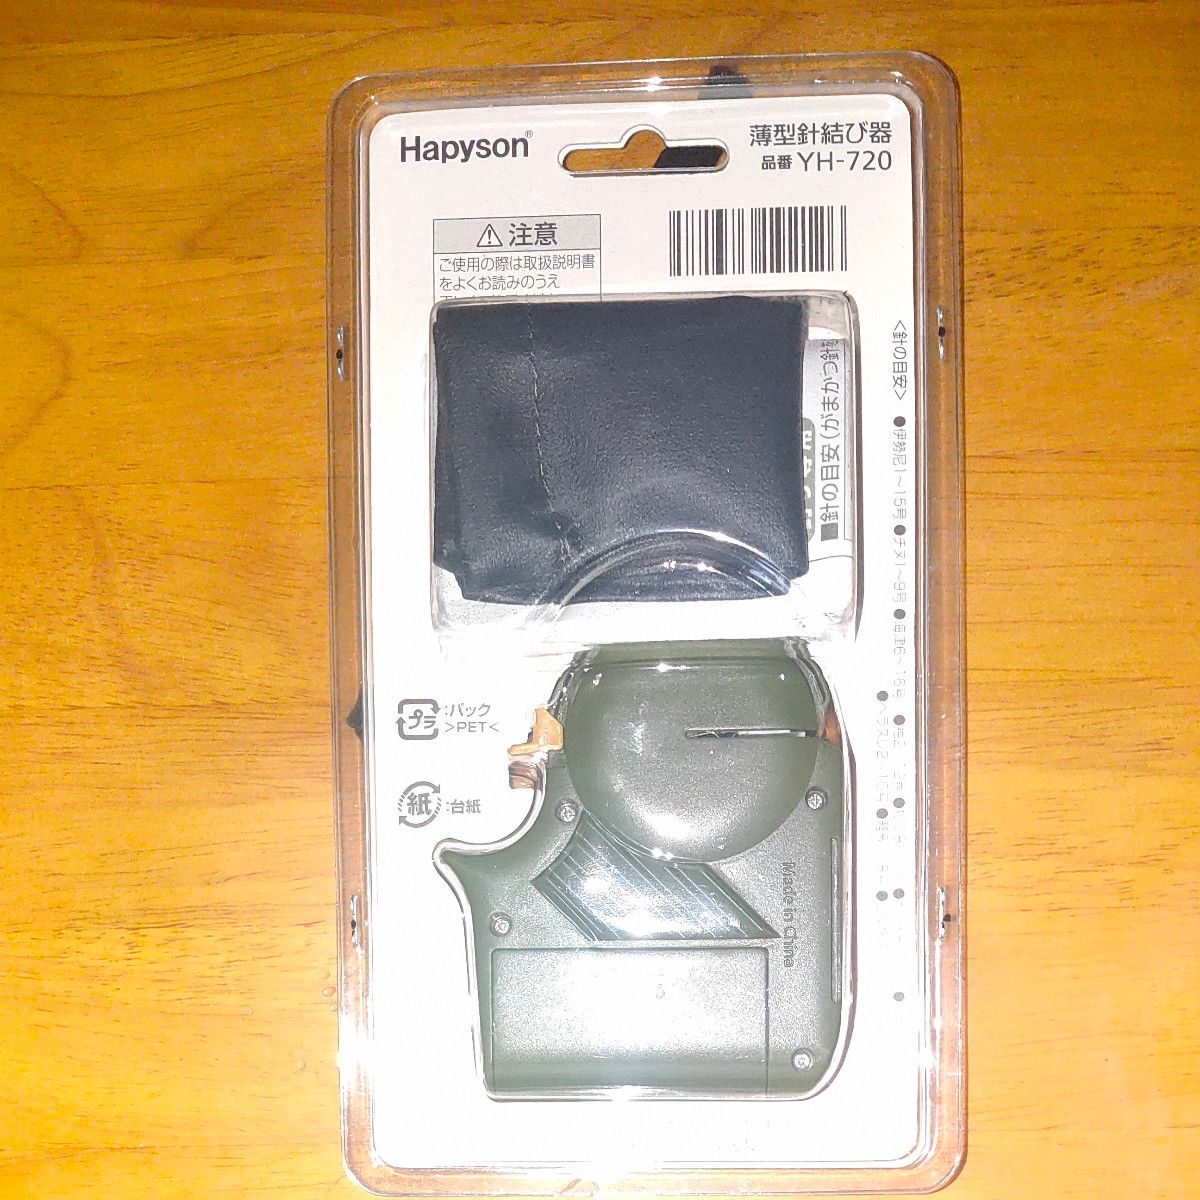 ハピソン (Hapyson) YH-720 乾電池式薄型針結び器 SLIMII雑貨